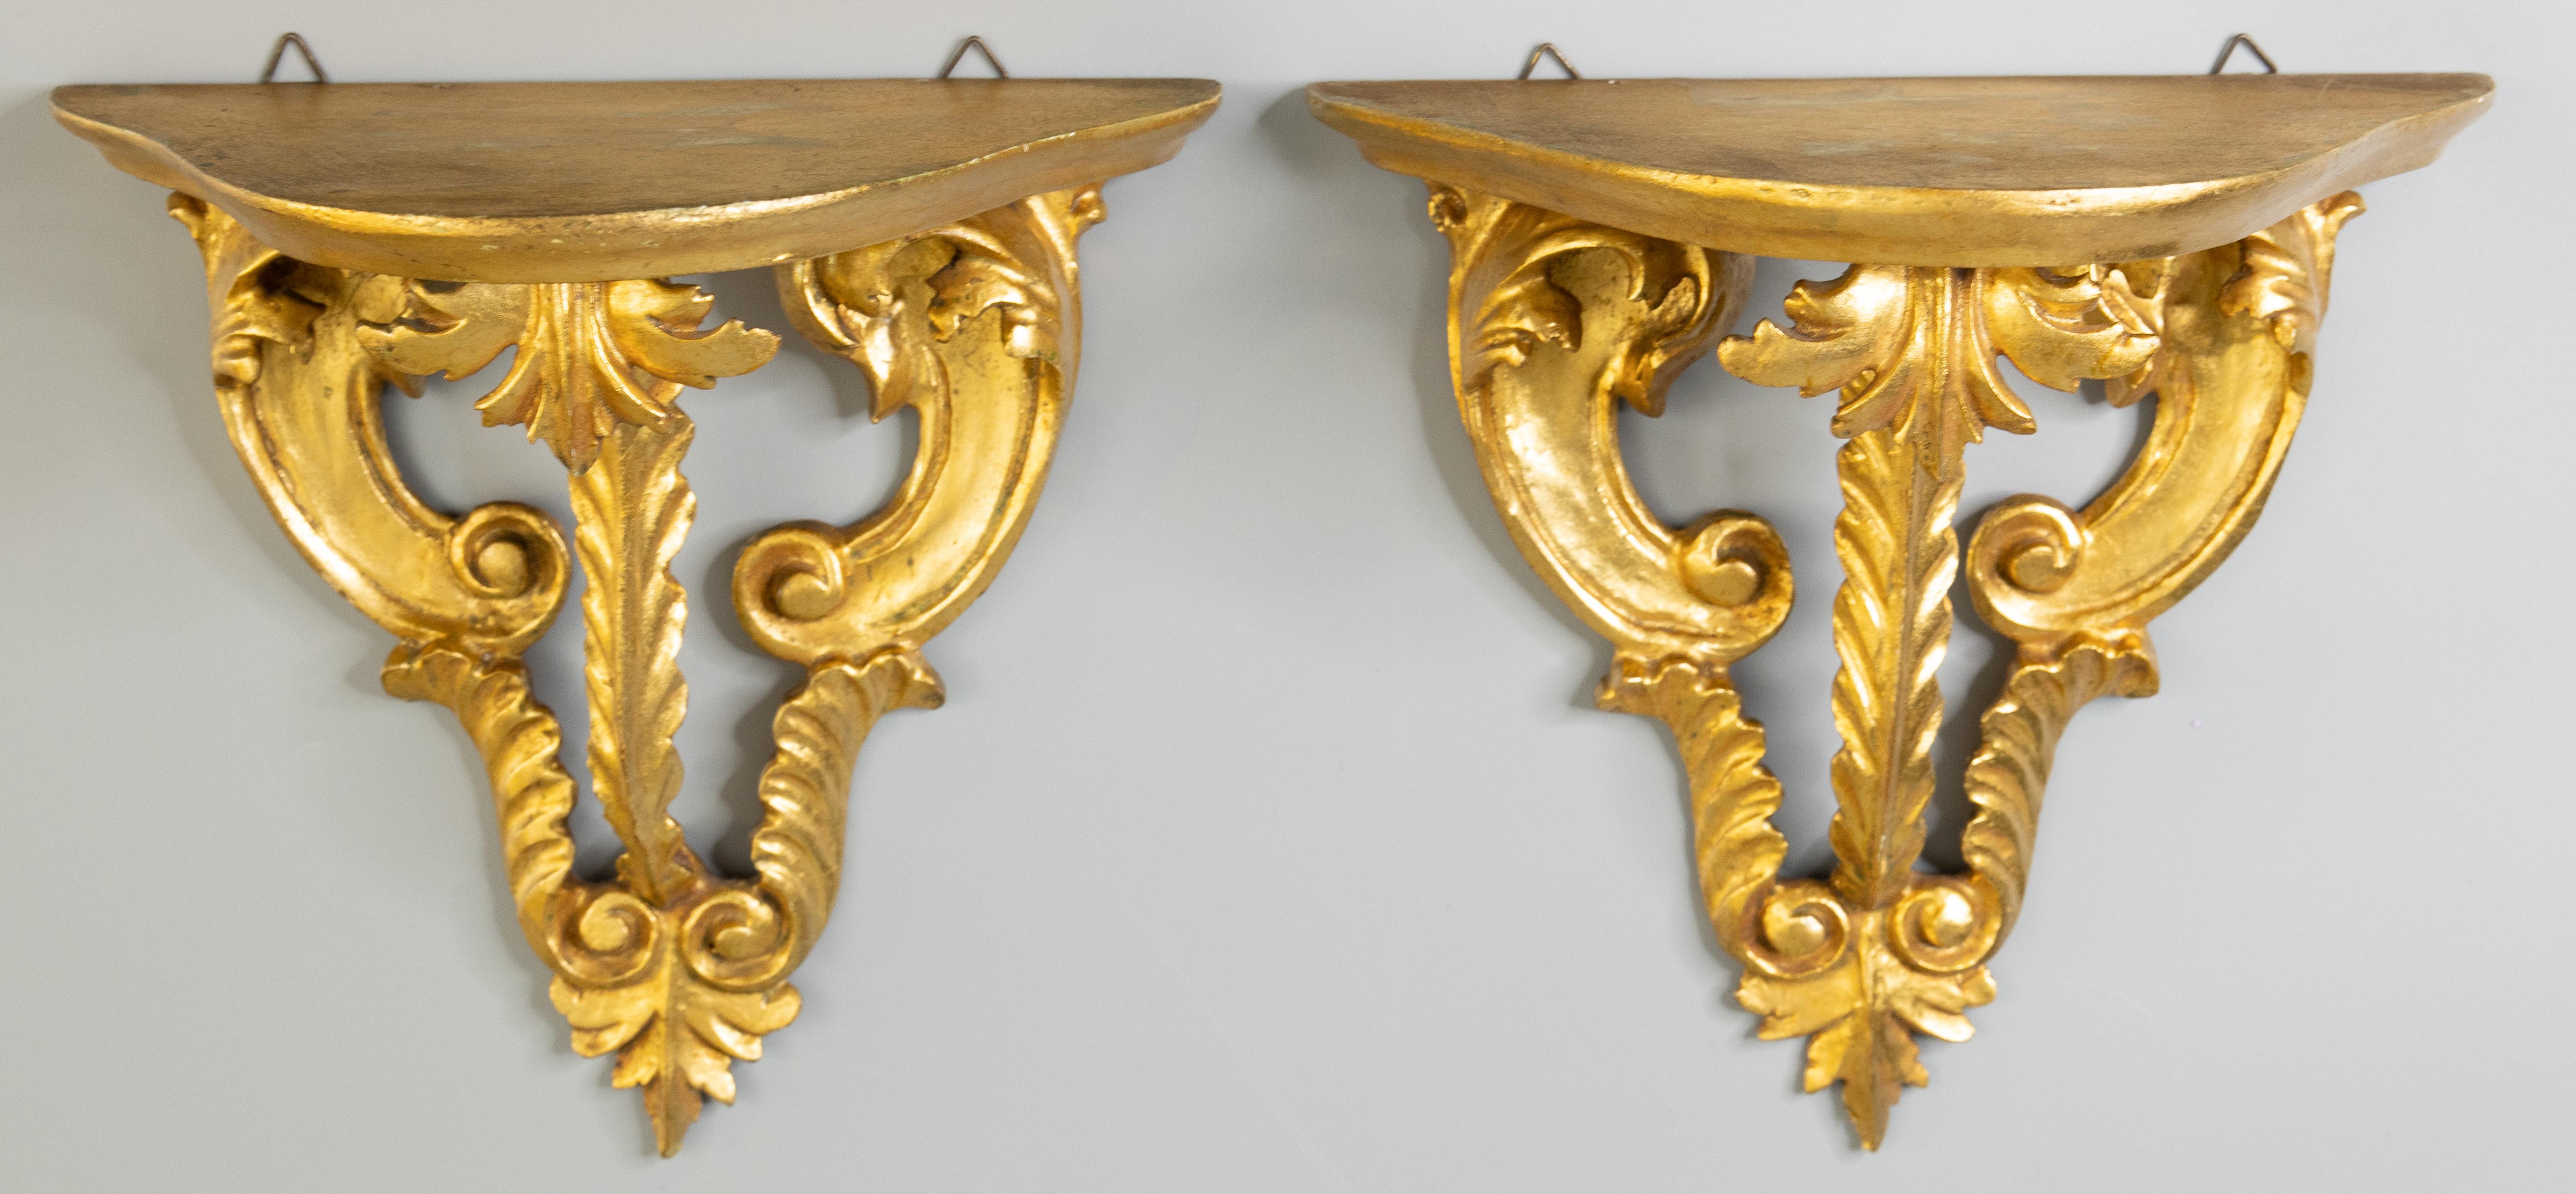 Une belle paire de supports muraux ou d'étagères en bois doré de Florence, Italie, vers 1950. Ces élégantes consoles sont ornées d'un motif de feuilles d'acanthe sculptées à la main et d'une magnifique patine dorée. Elles sont parfaites pour